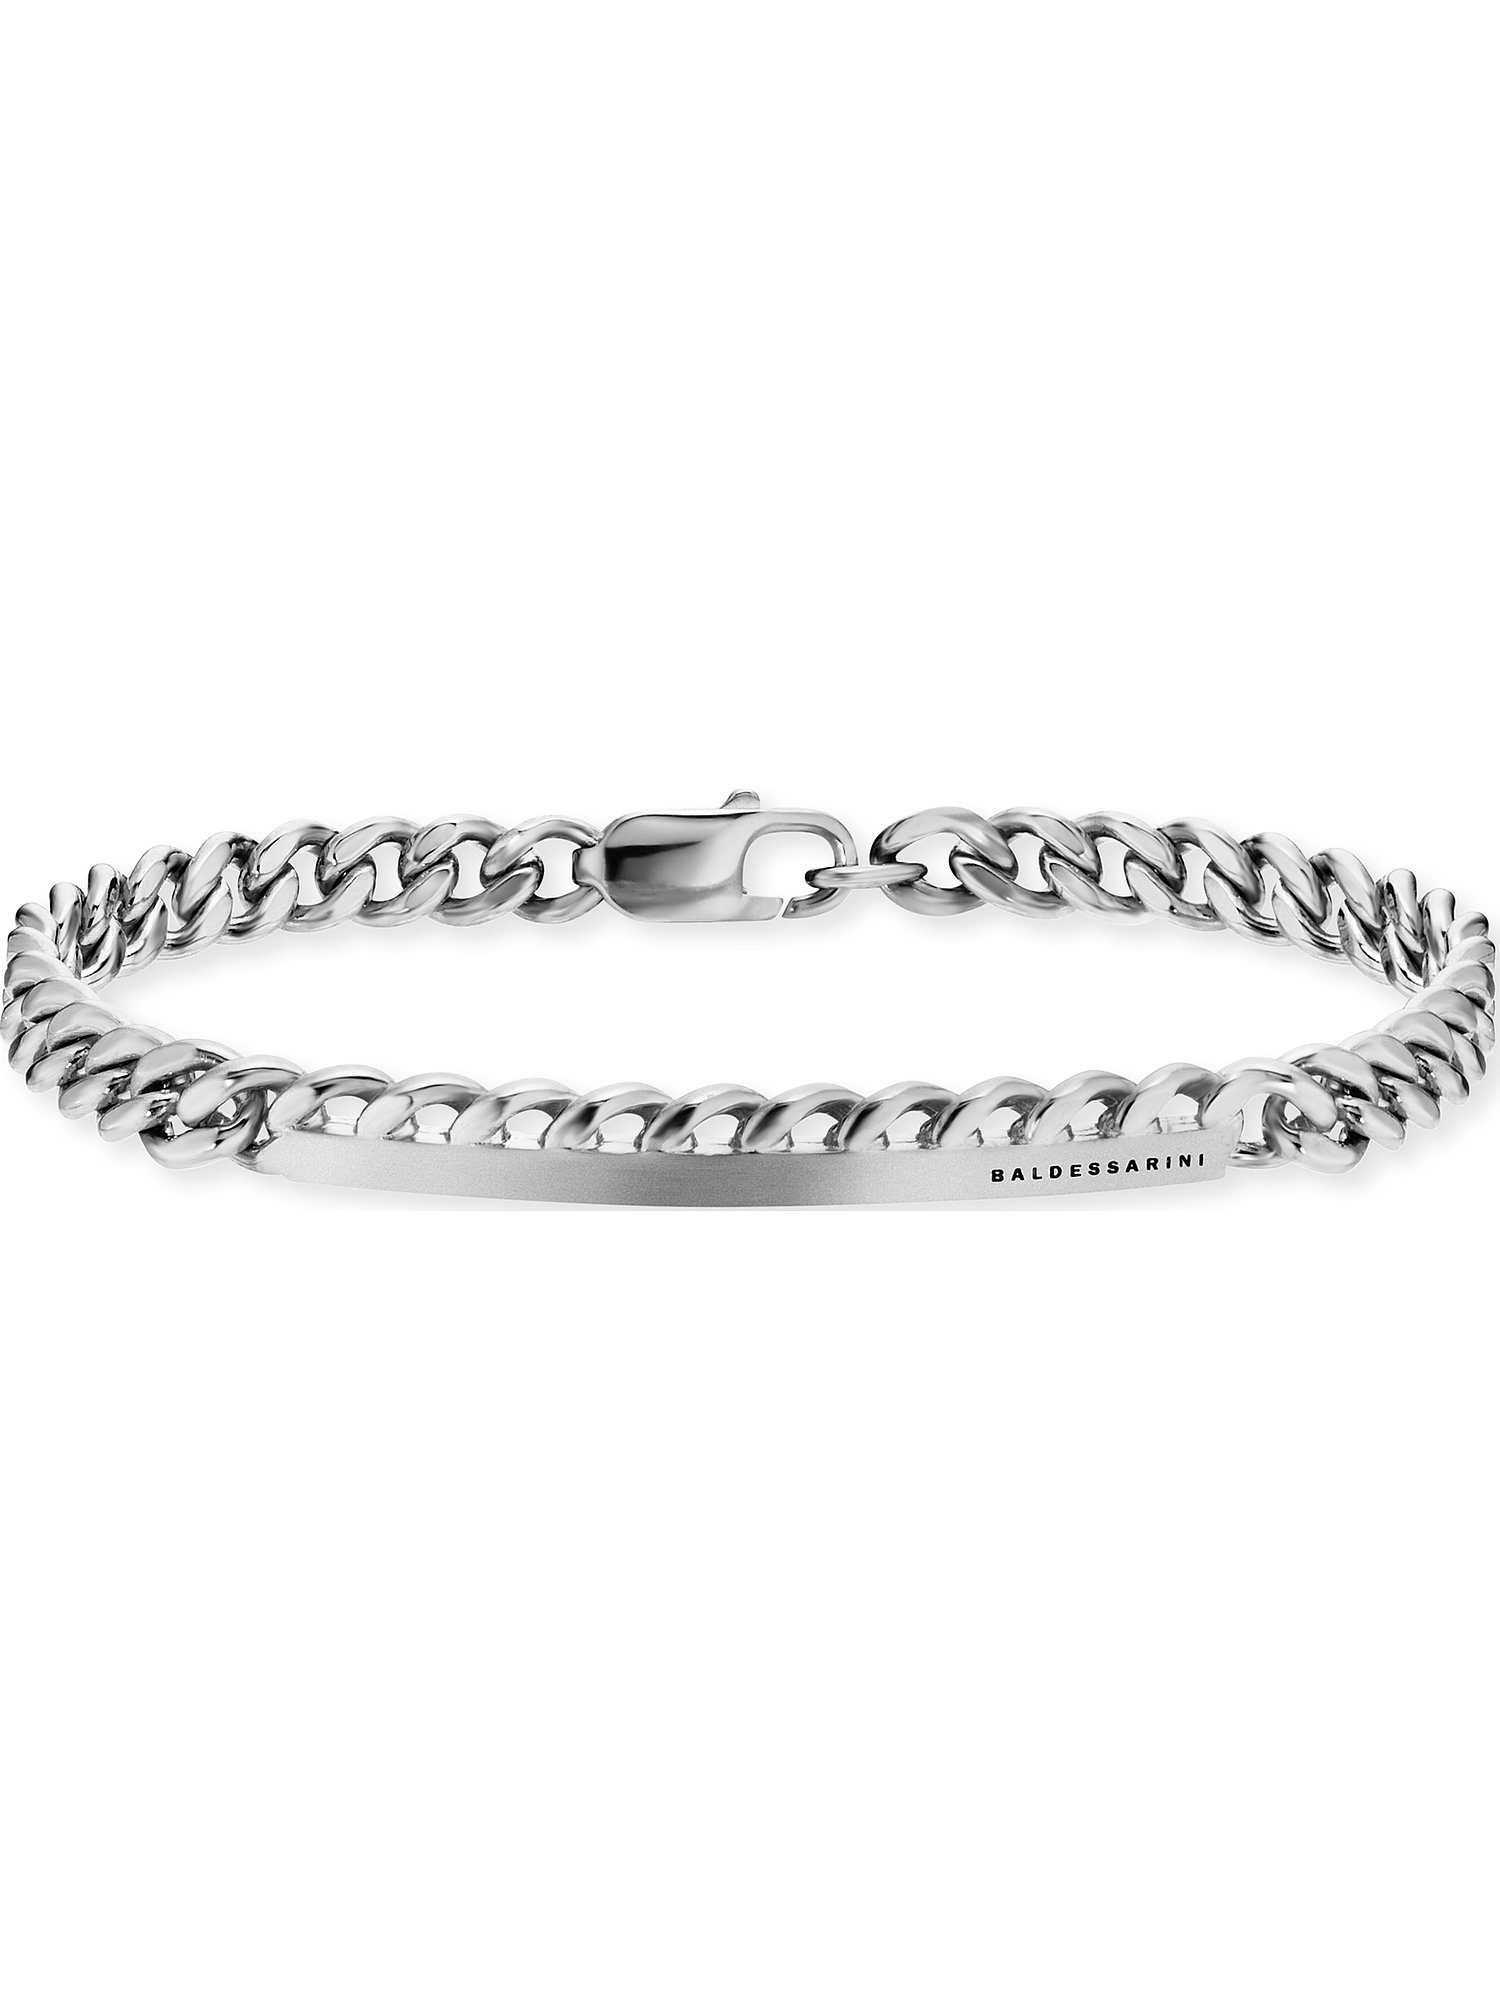 BALDESSARINI Silberarmband Baldessarini Herren-Armband 925er Silber, Modern,  In eleganter Produktverpackung ideal für Geschenke